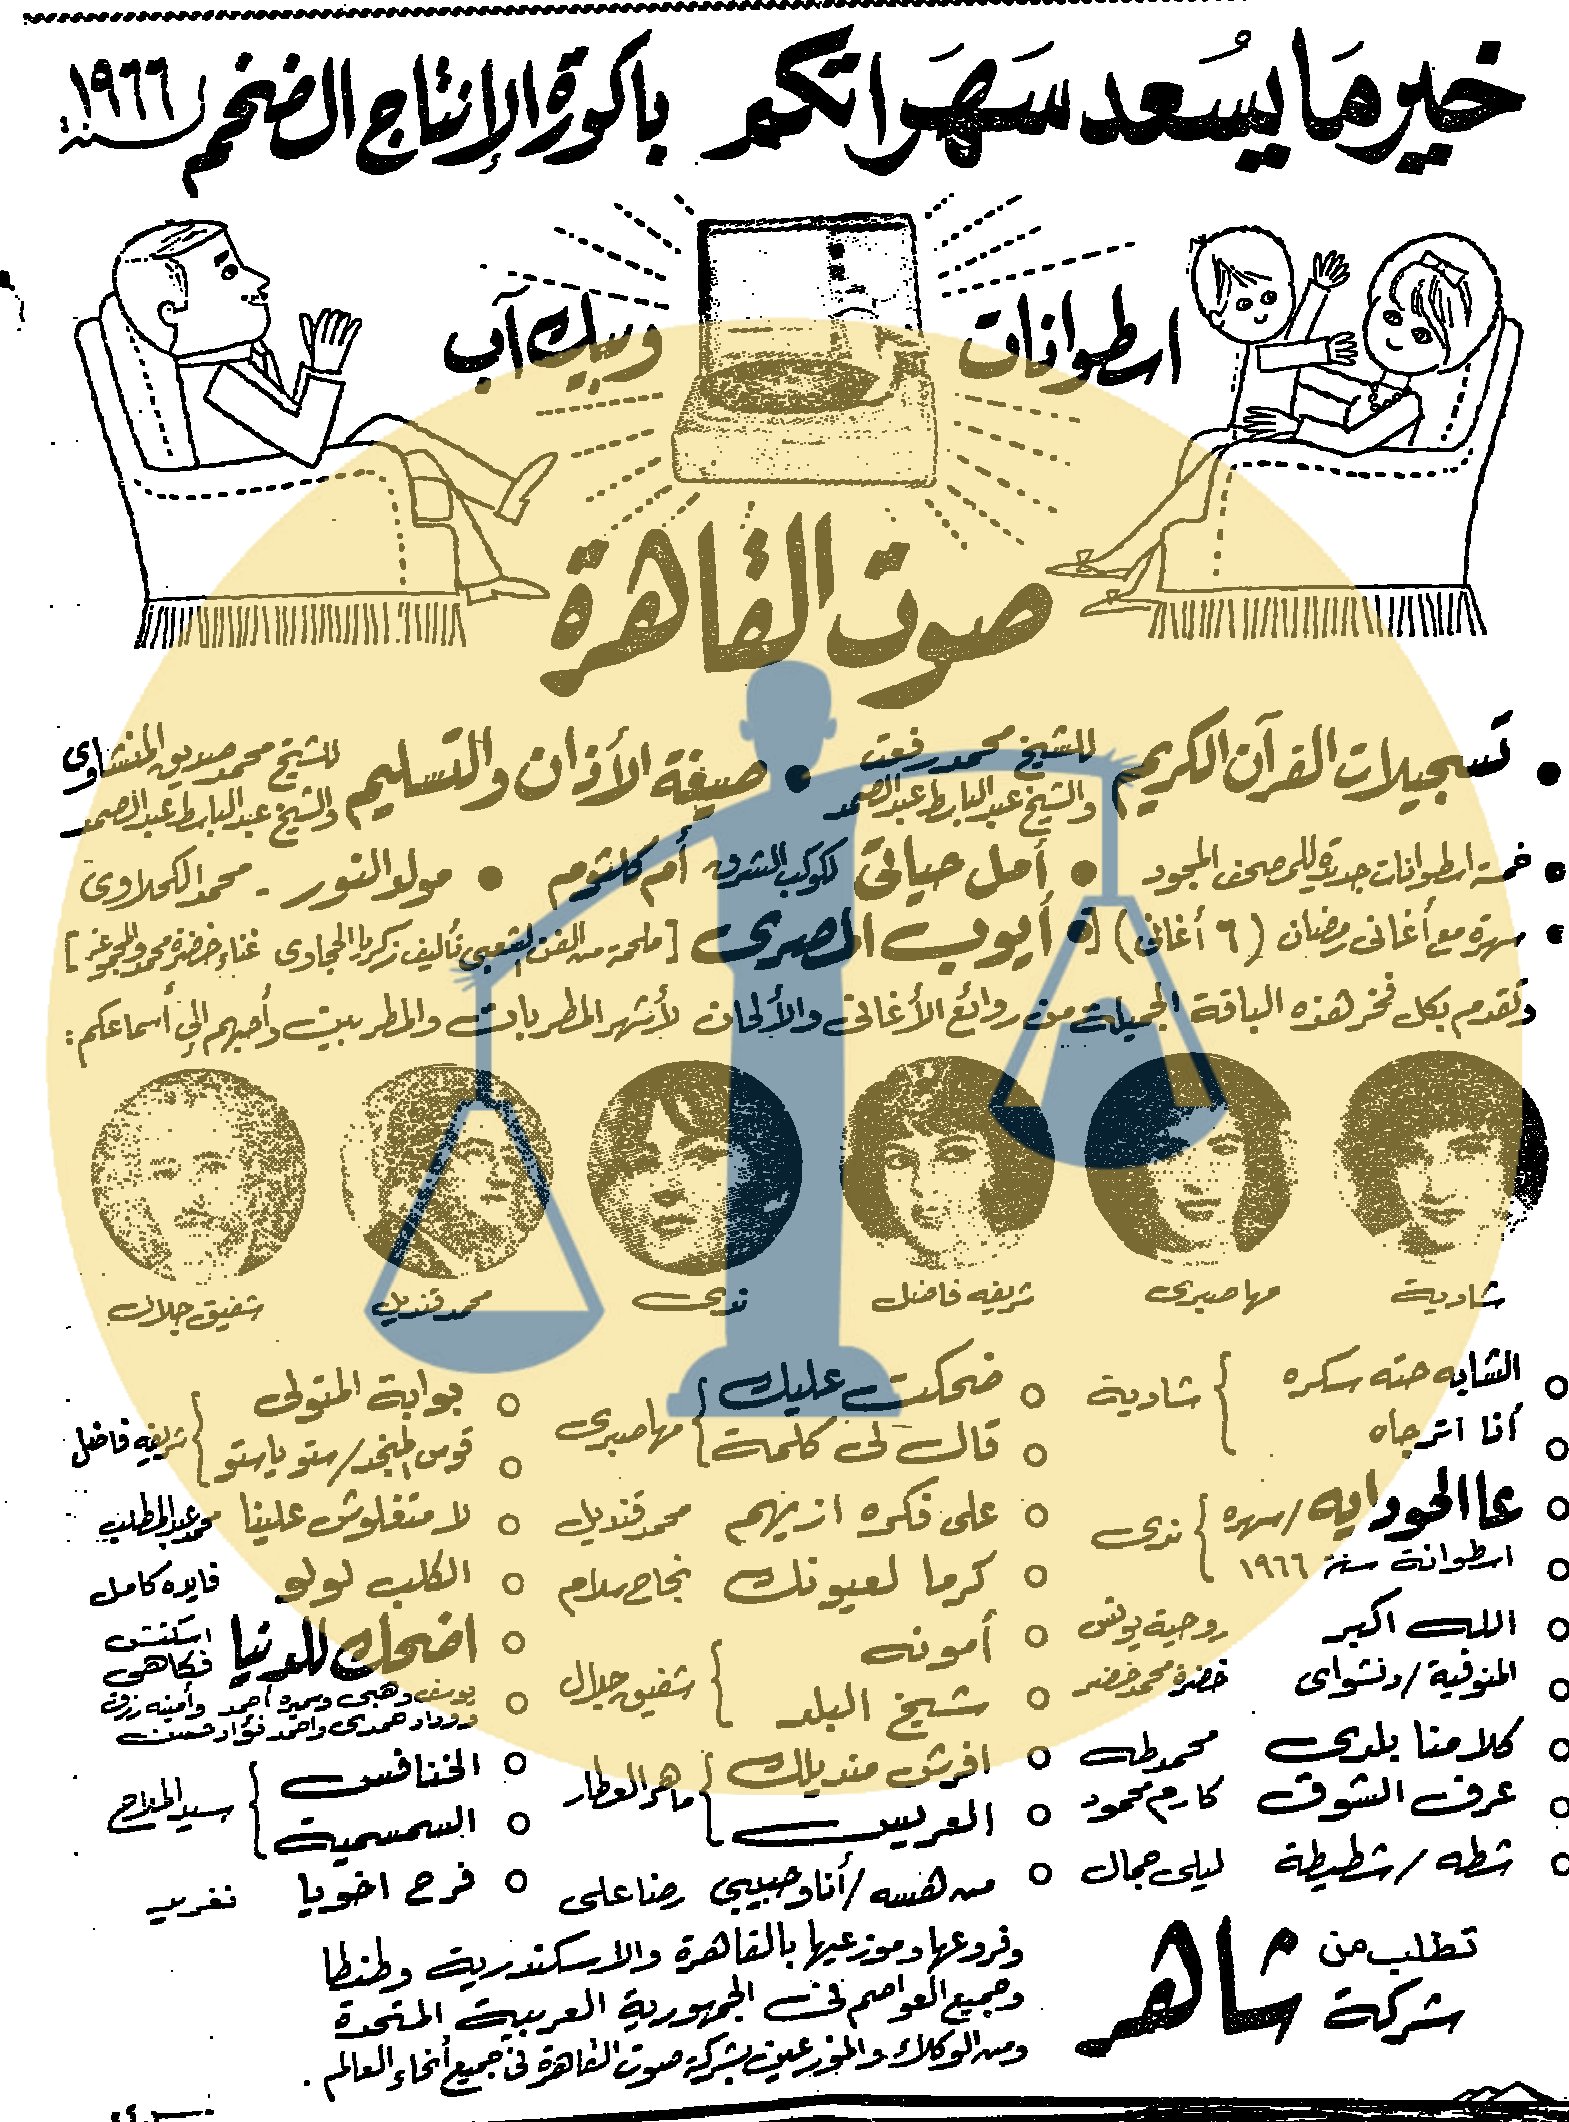 إعلان اسطوانات صوت القاهرة الثلاثاء 13 رمضان 1385 هجري الموافق 4 يناير عام 1966 م